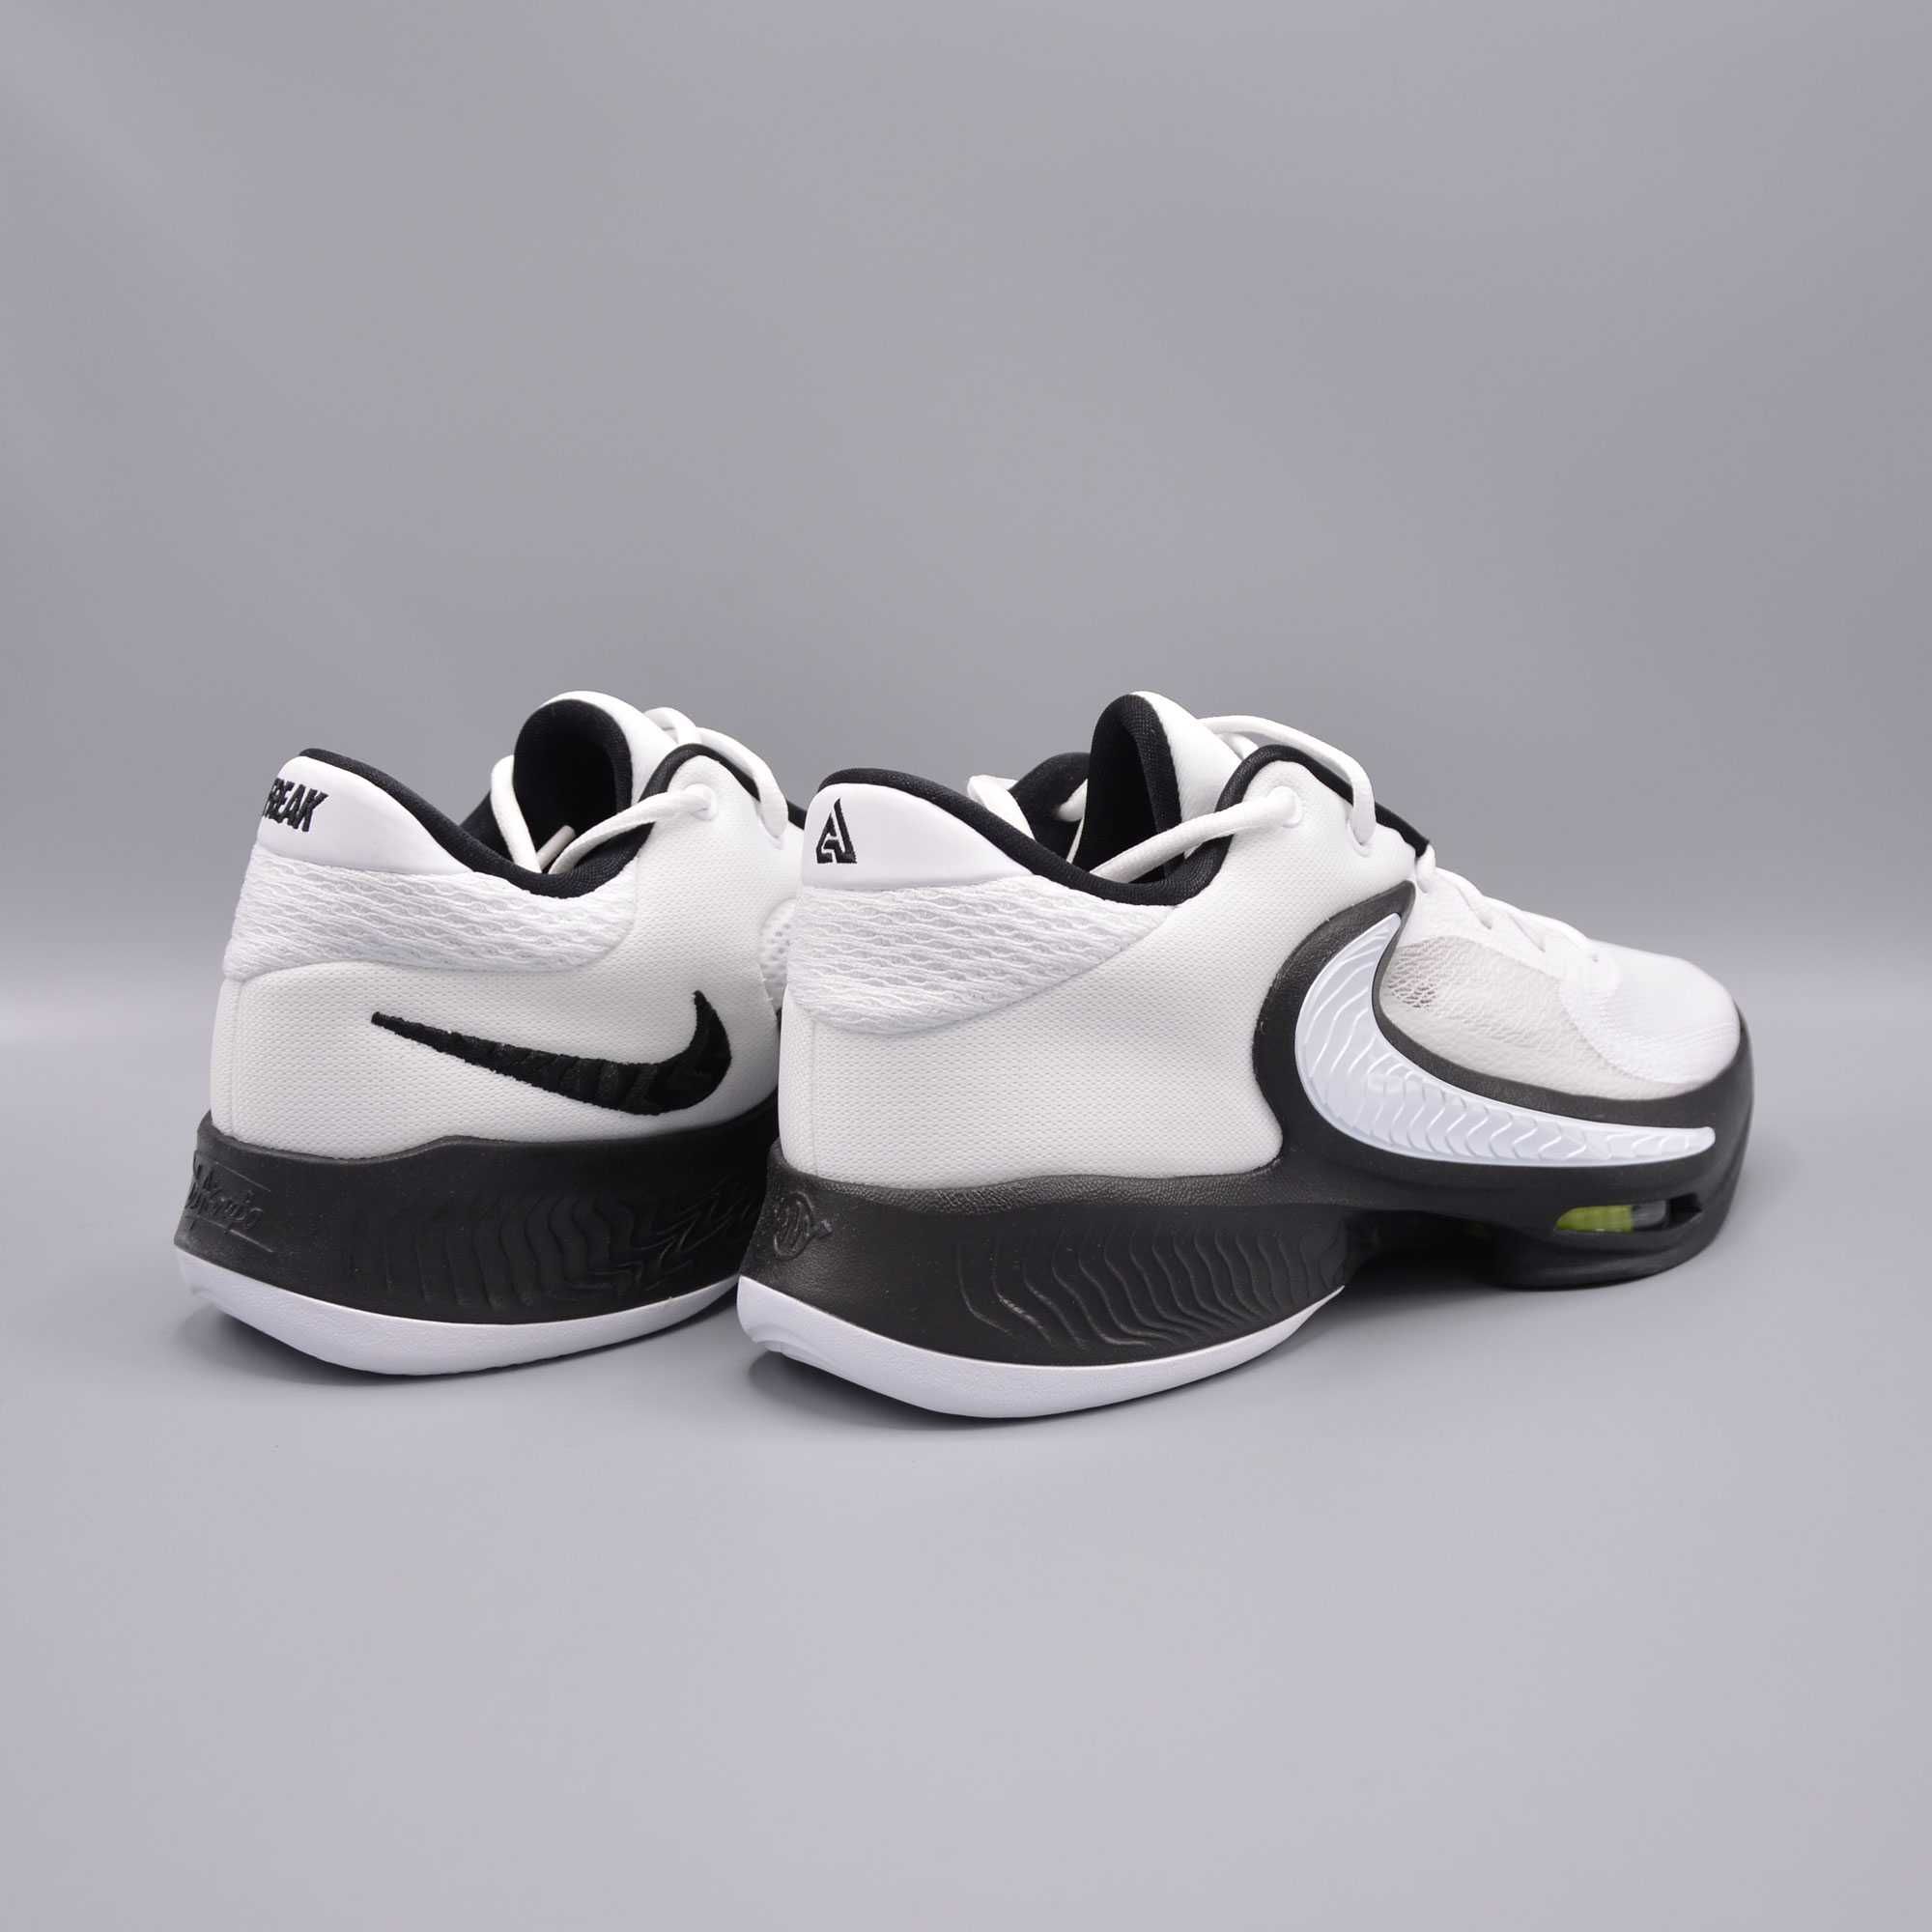 Кросівки Nike Zoom Freak 4 TB Оригінал!! D09679-100 (kyrie PG6)